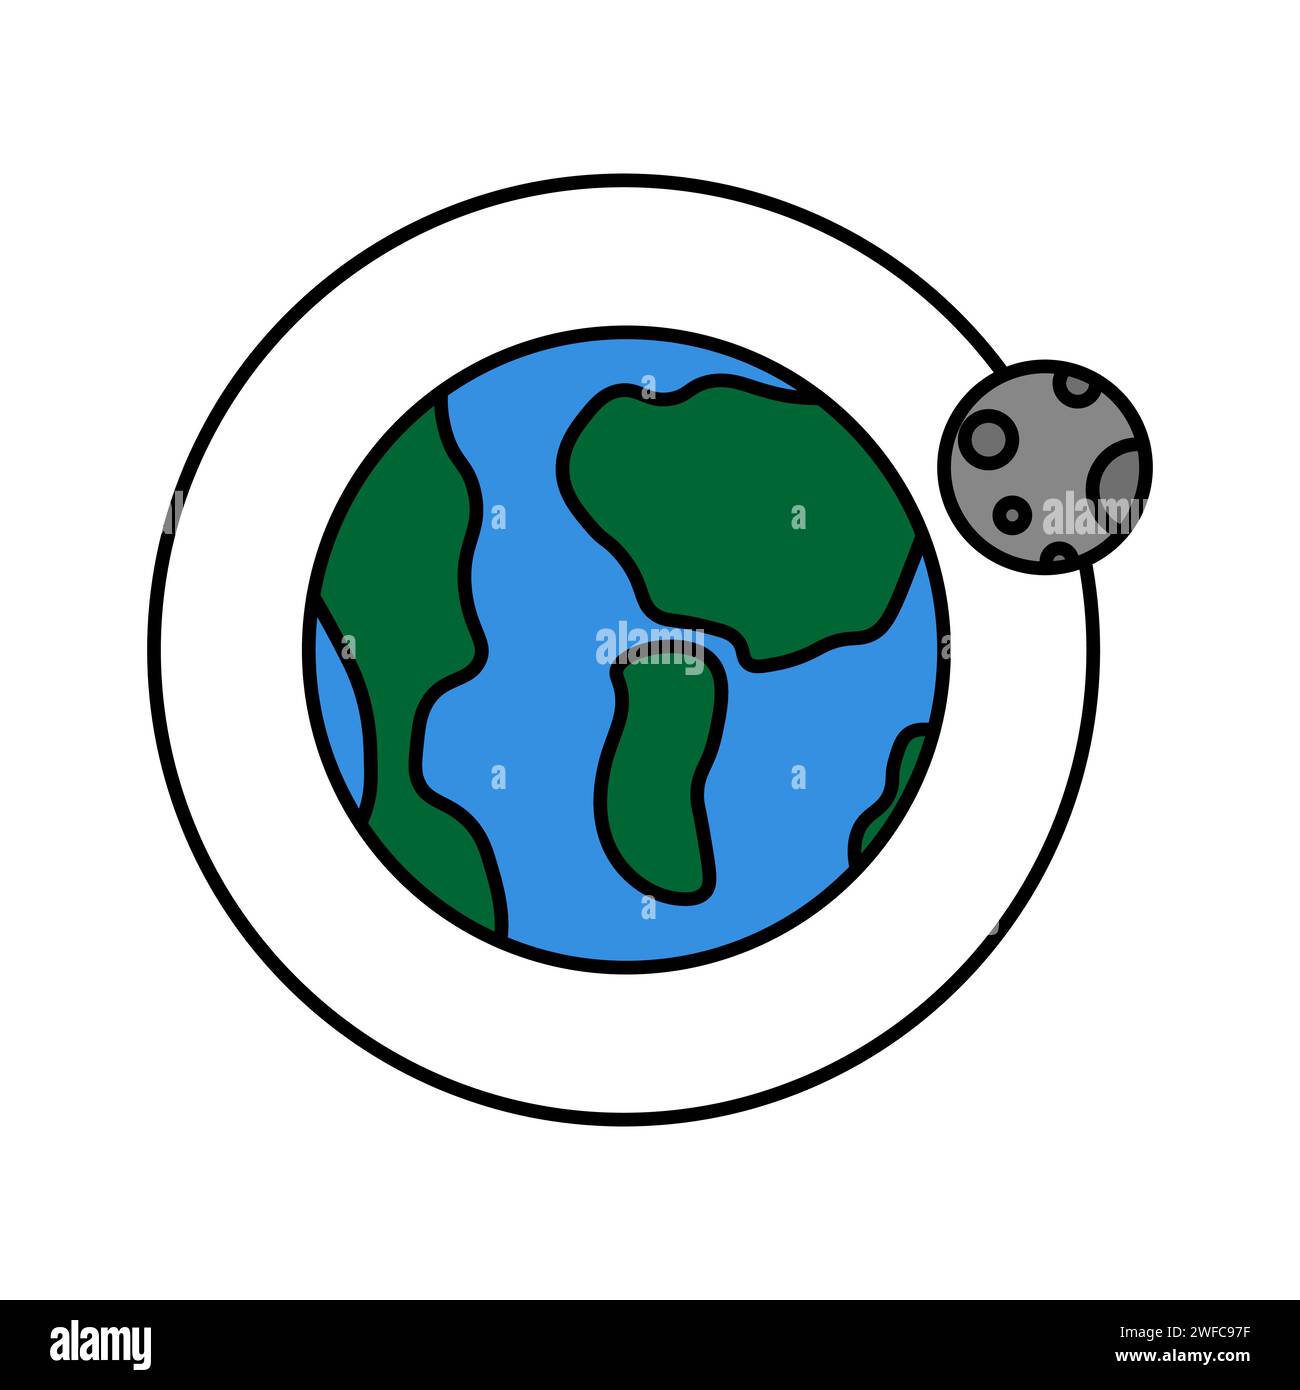 Orbita terrestre lunare. Icona a forma di stella. Disegno dello spazio. Disegno per bambini. Illustrazione vettoriale. Immagine stock. EPS 10. Illustrazione Vettoriale